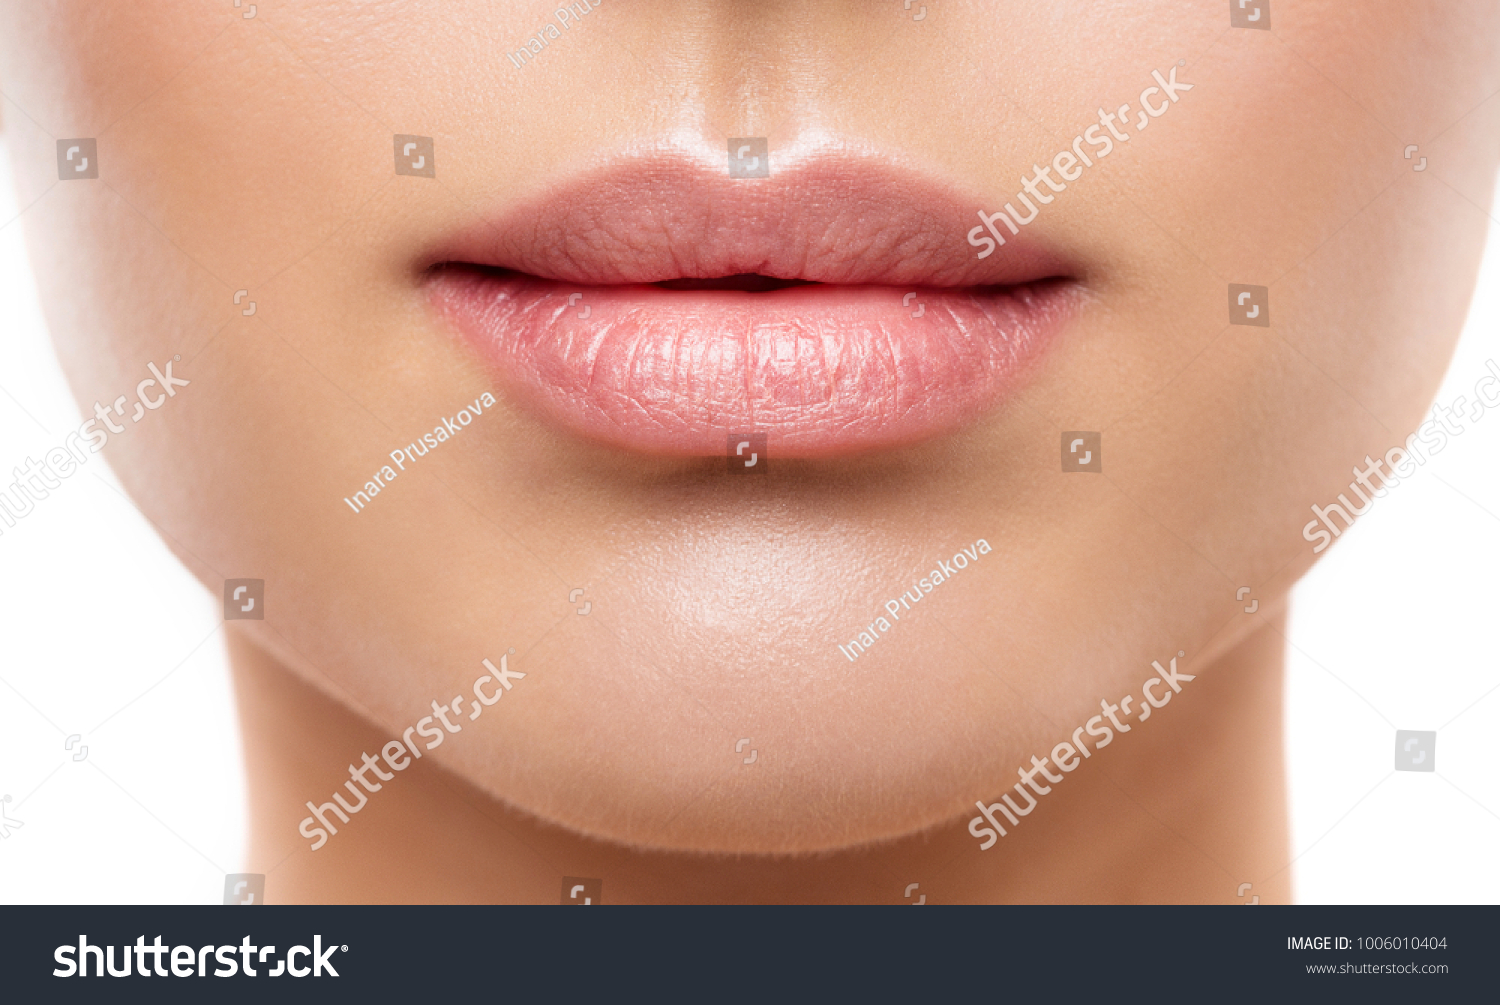 Lips Beauty Closeup, Woman Natural Face Make Up, Beautiful Full Lip and Pink Lipstick #1006010404